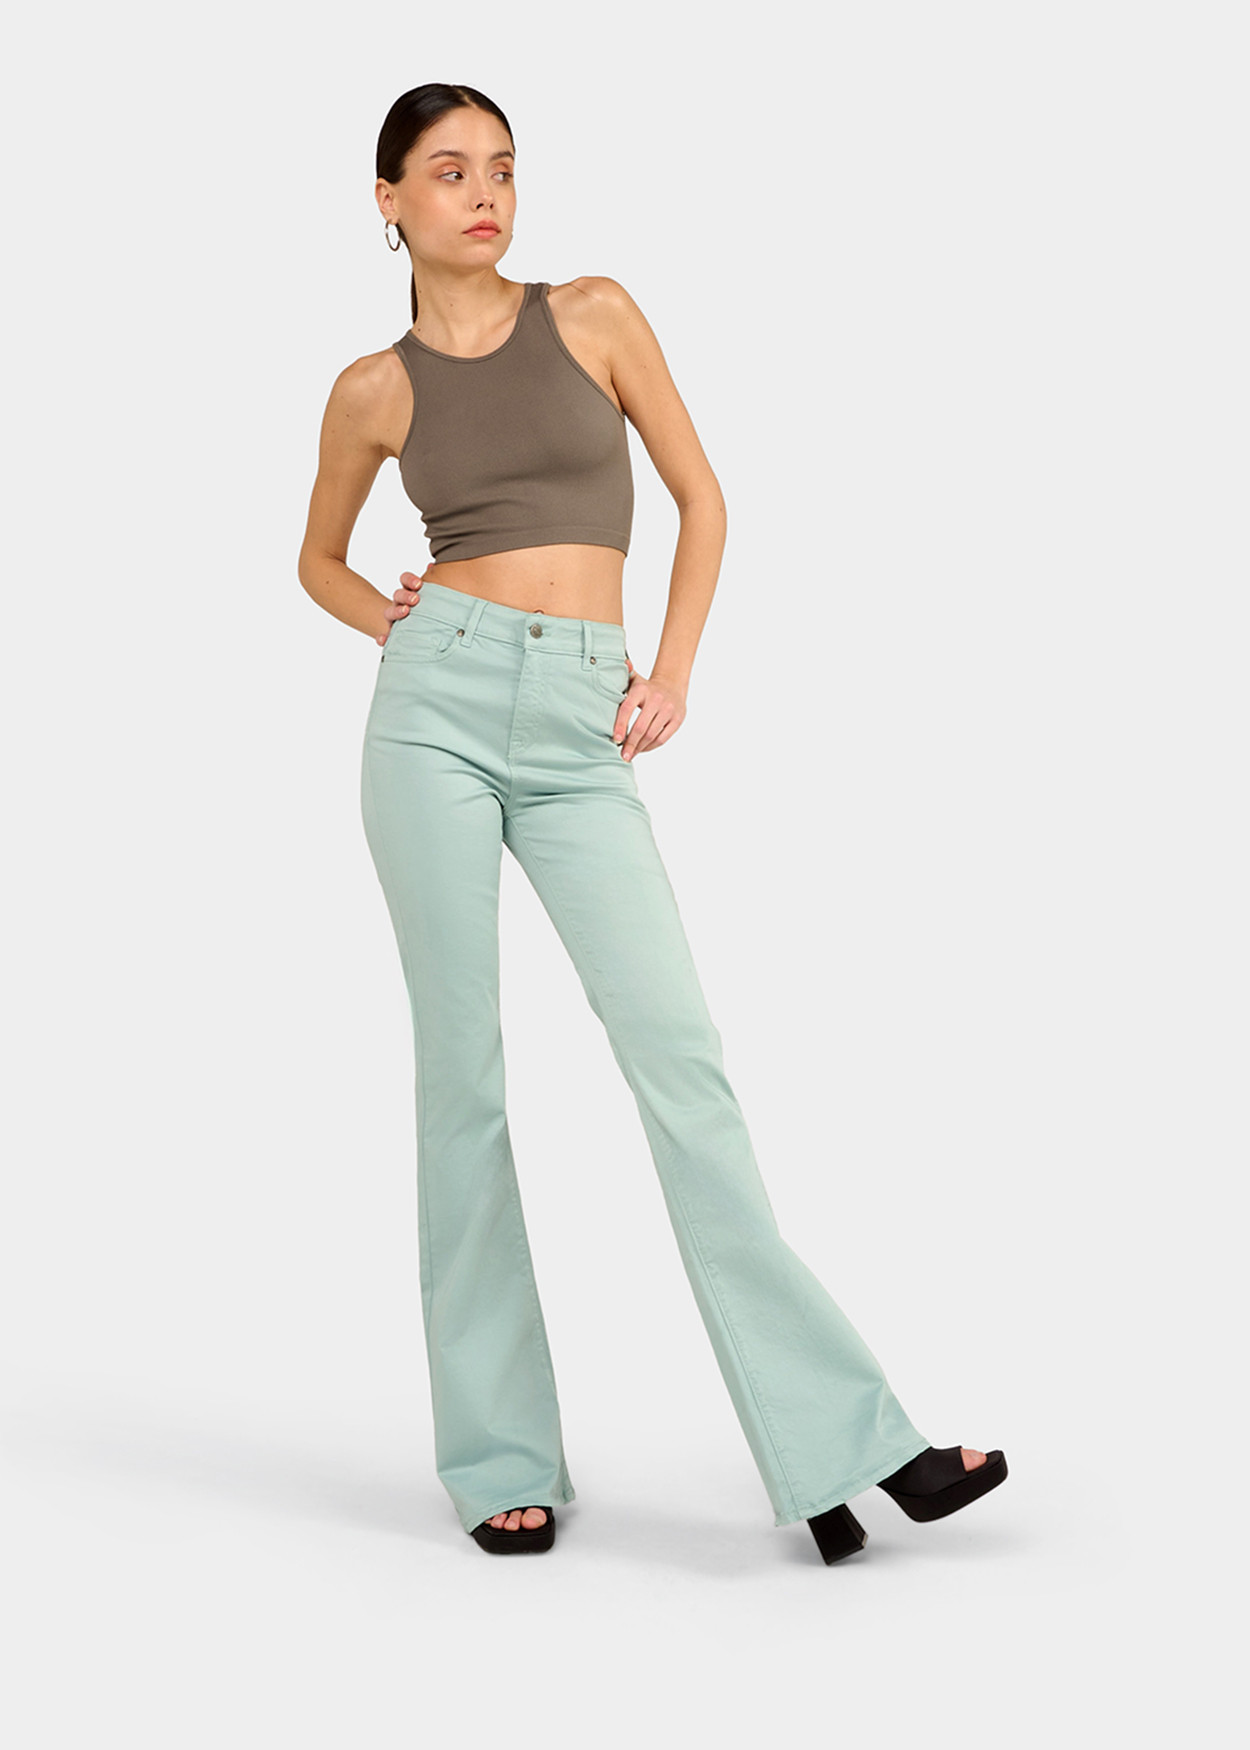 CARLA-NECTAR - Pantalon de couleur - Pantalon évasé - Short long en satin élastique | Tailles en pouces Cimarron